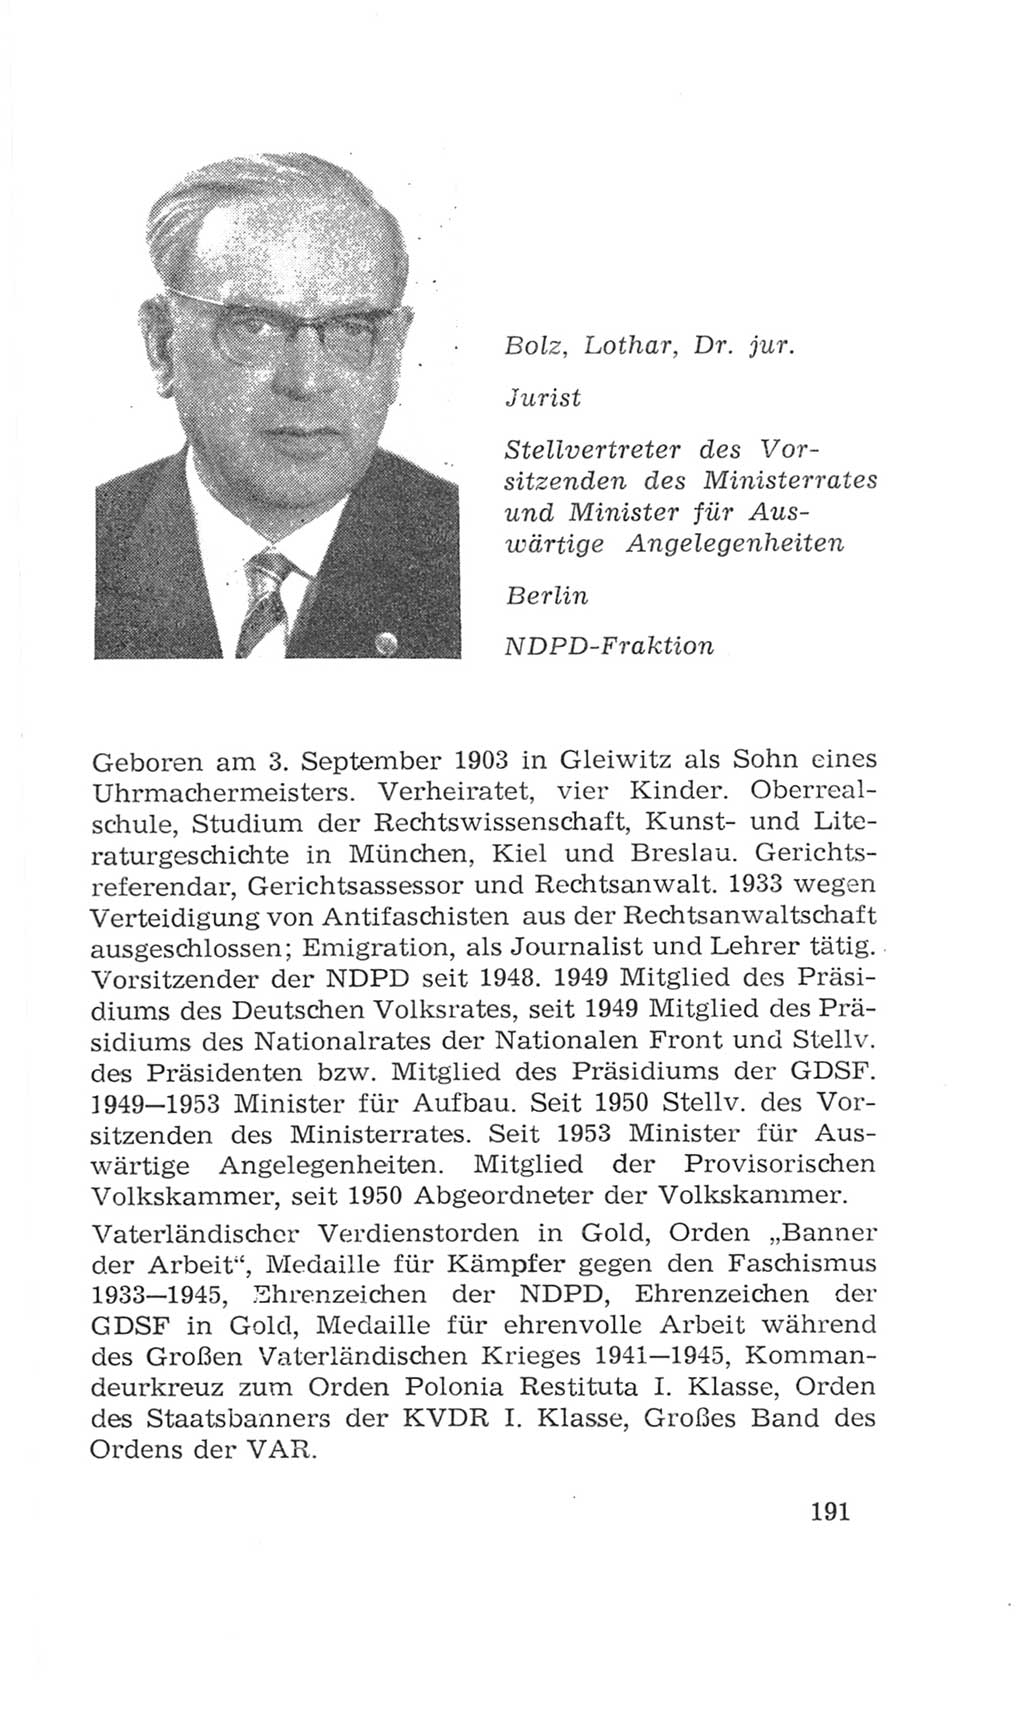 Volkskammer (VK) der Deutschen Demokratischen Republik (DDR), 4. Wahlperiode 1963-1967, Seite 191 (VK. DDR 4. WP. 1963-1967, S. 191)